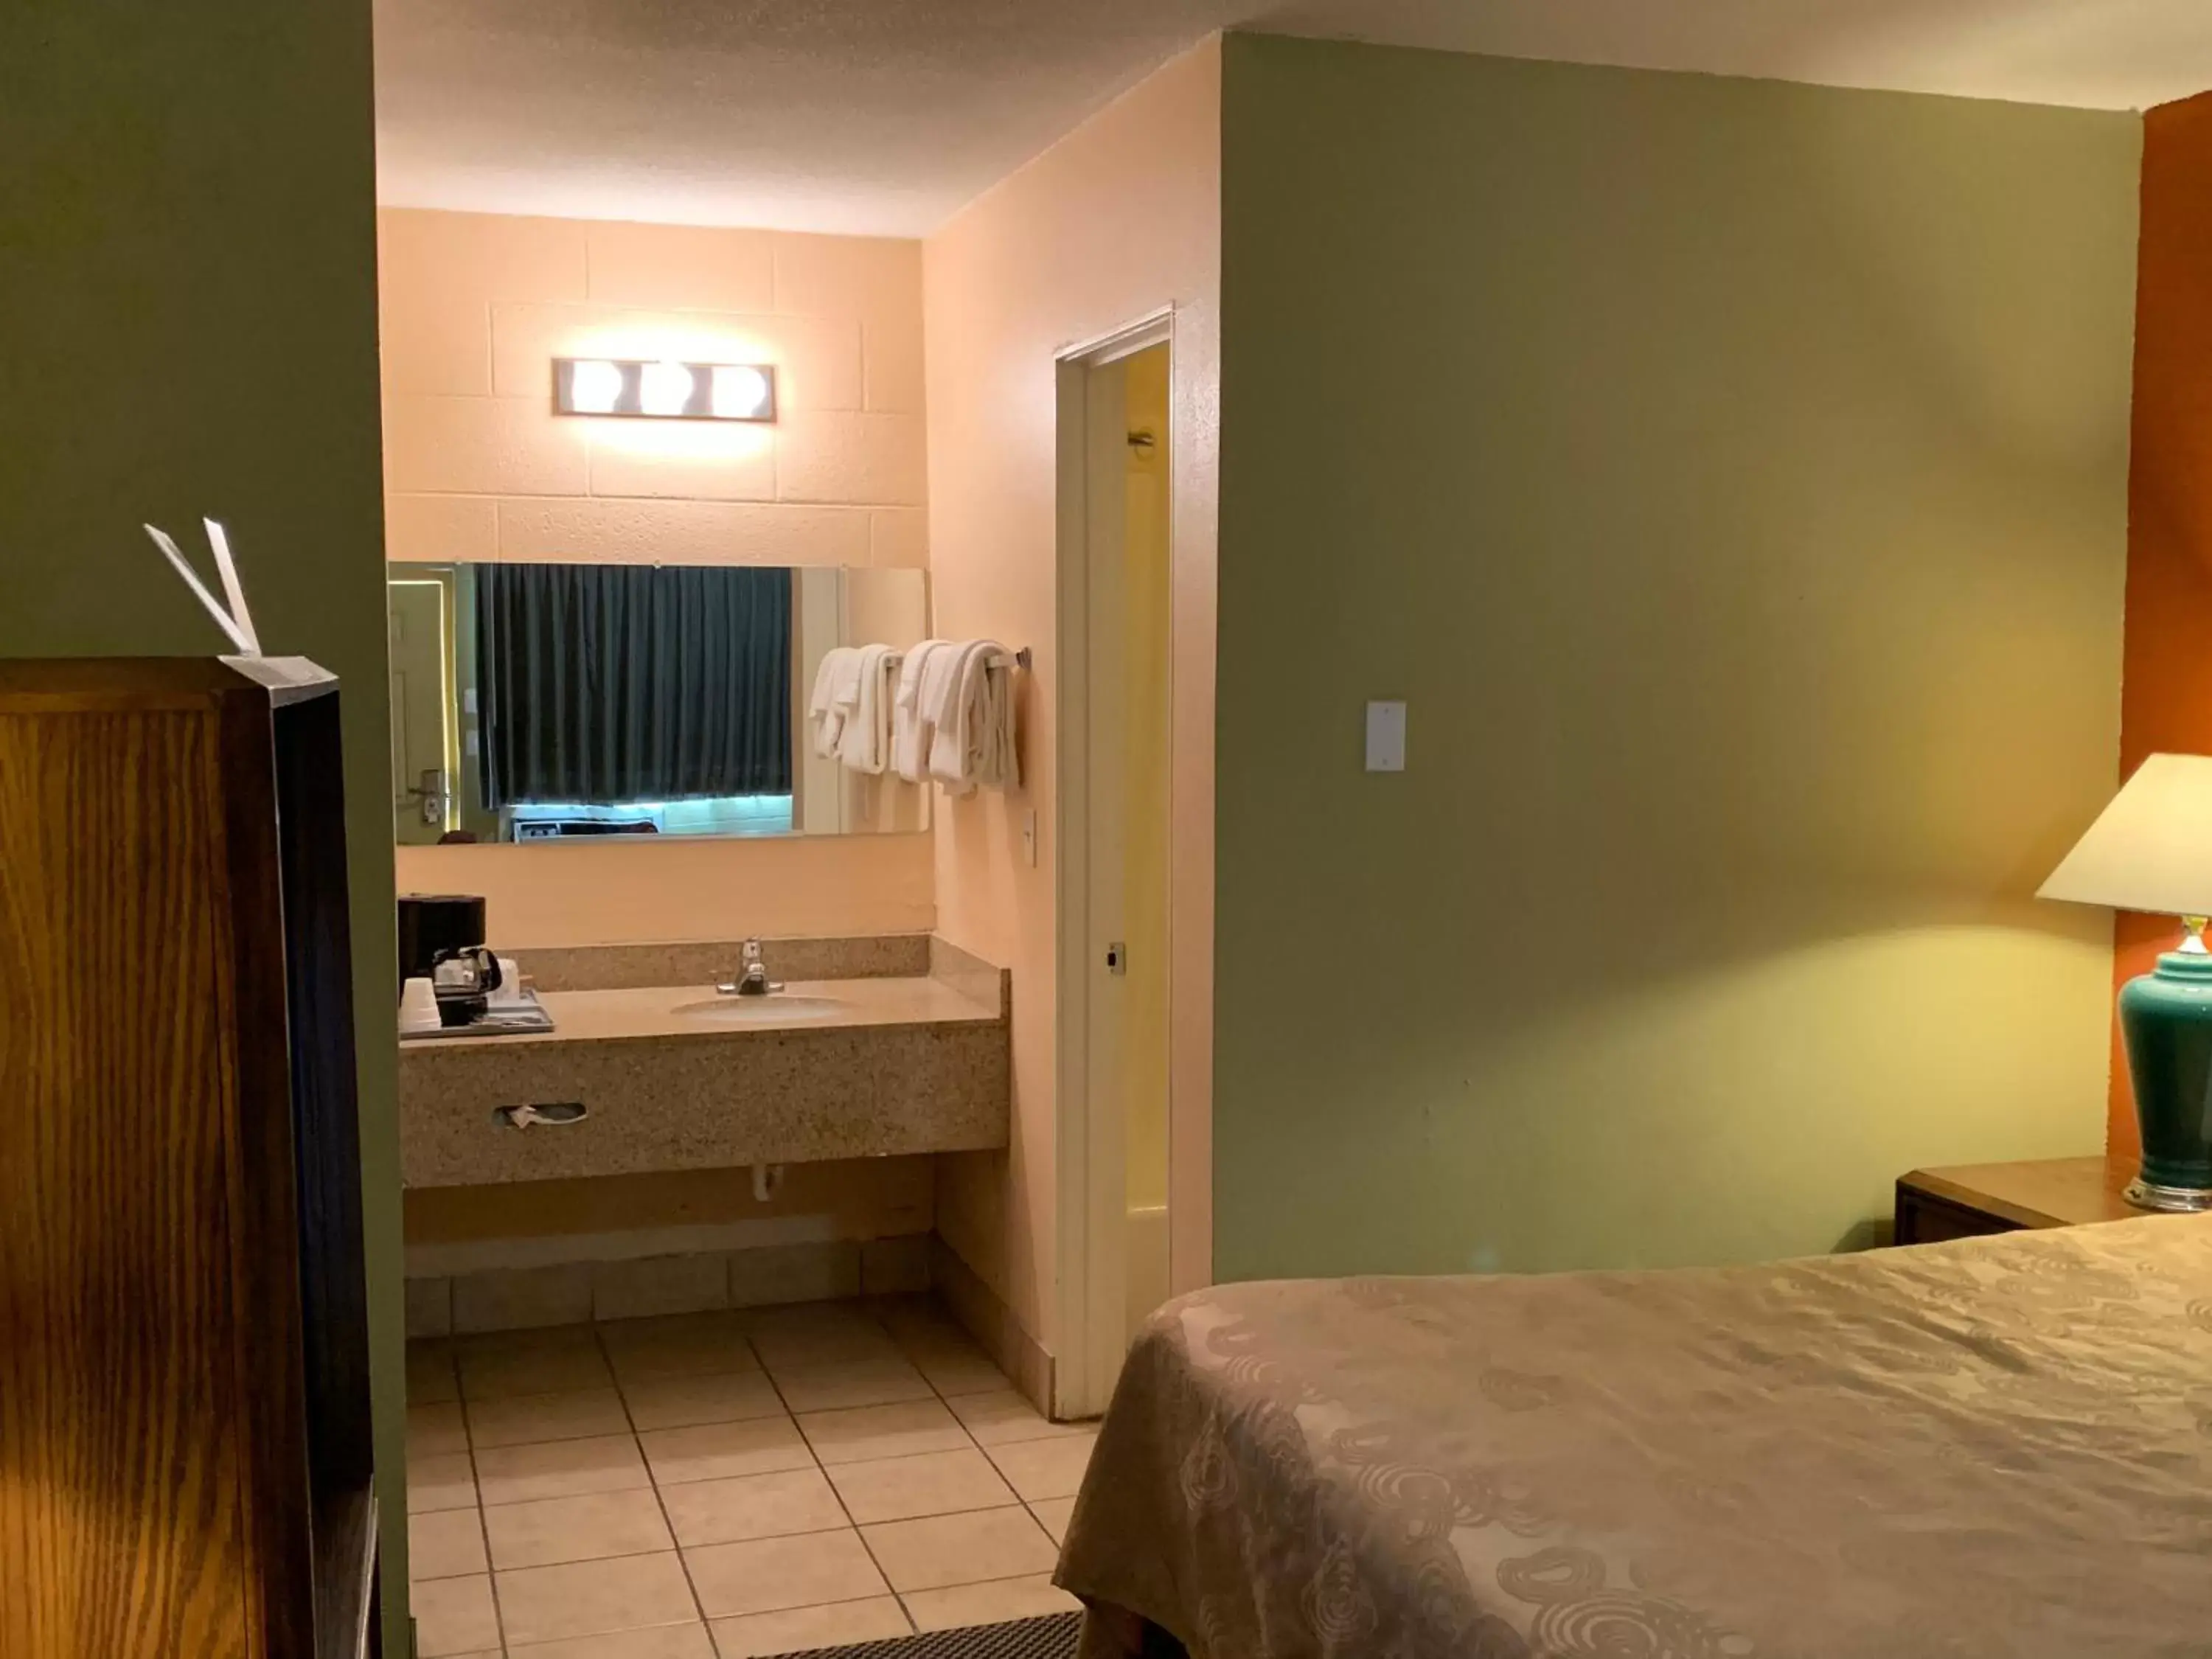 Bathroom, Bed in Executive Inn Dodge City, KS